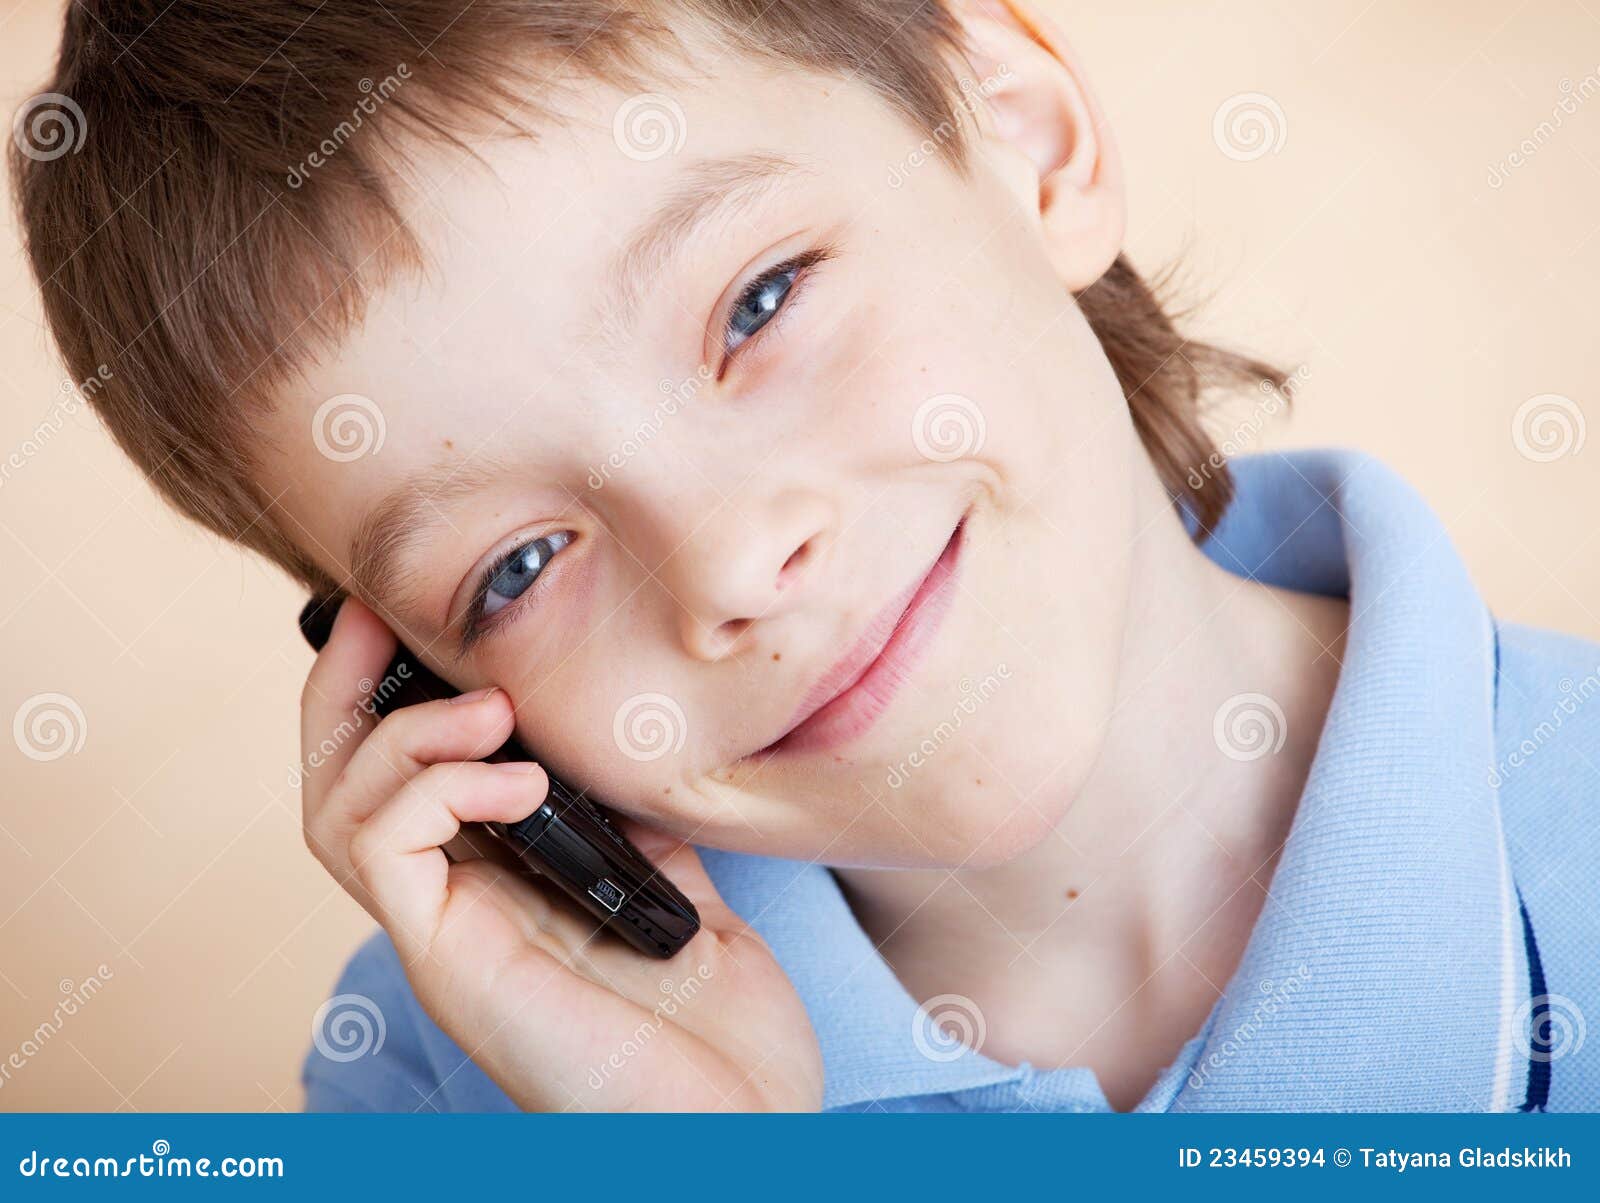 Включи телефон мальчик. Мальчик с телефоном. Подросток по телефону. Мальчик говорит по телефону. Пятилетний мальчик разговаривает по телефону.